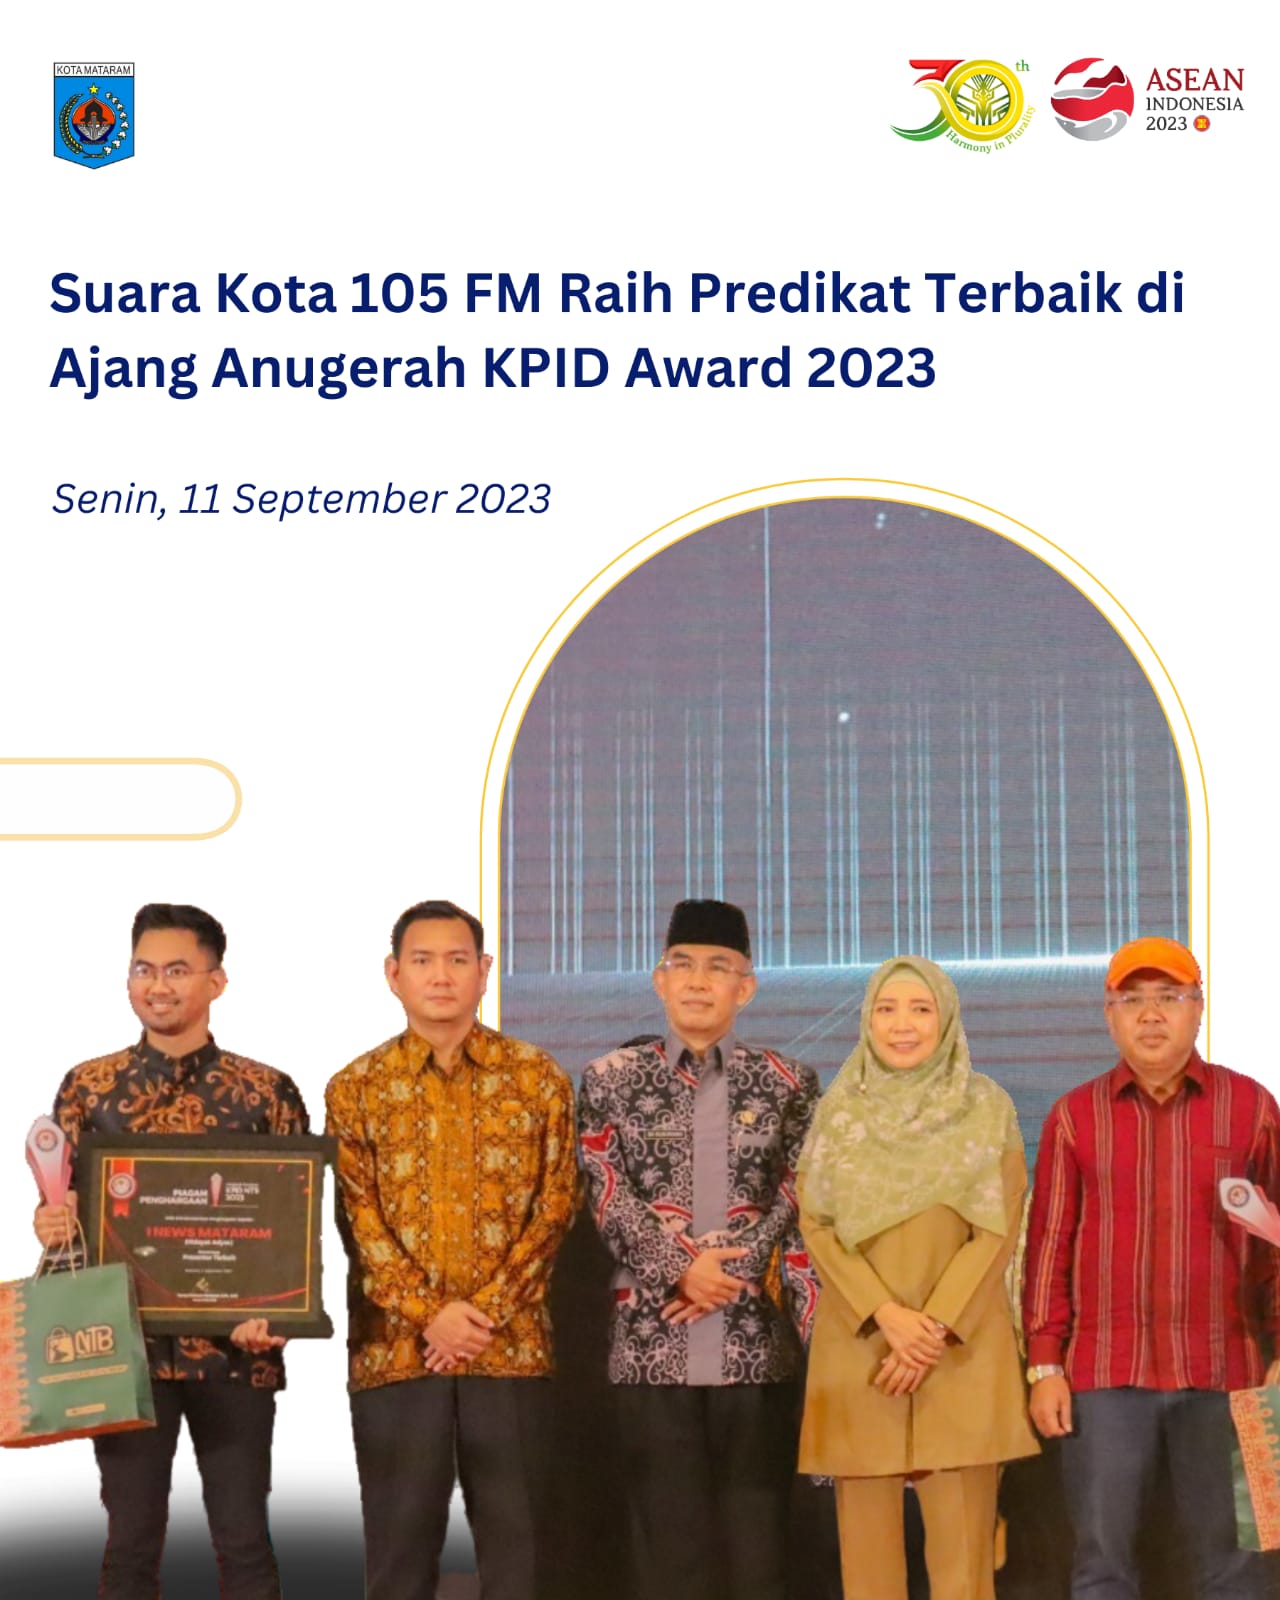 Suara Kota 105 FM Raih Predikat Terbaik di Ajang Anugerah KPID Award 2023